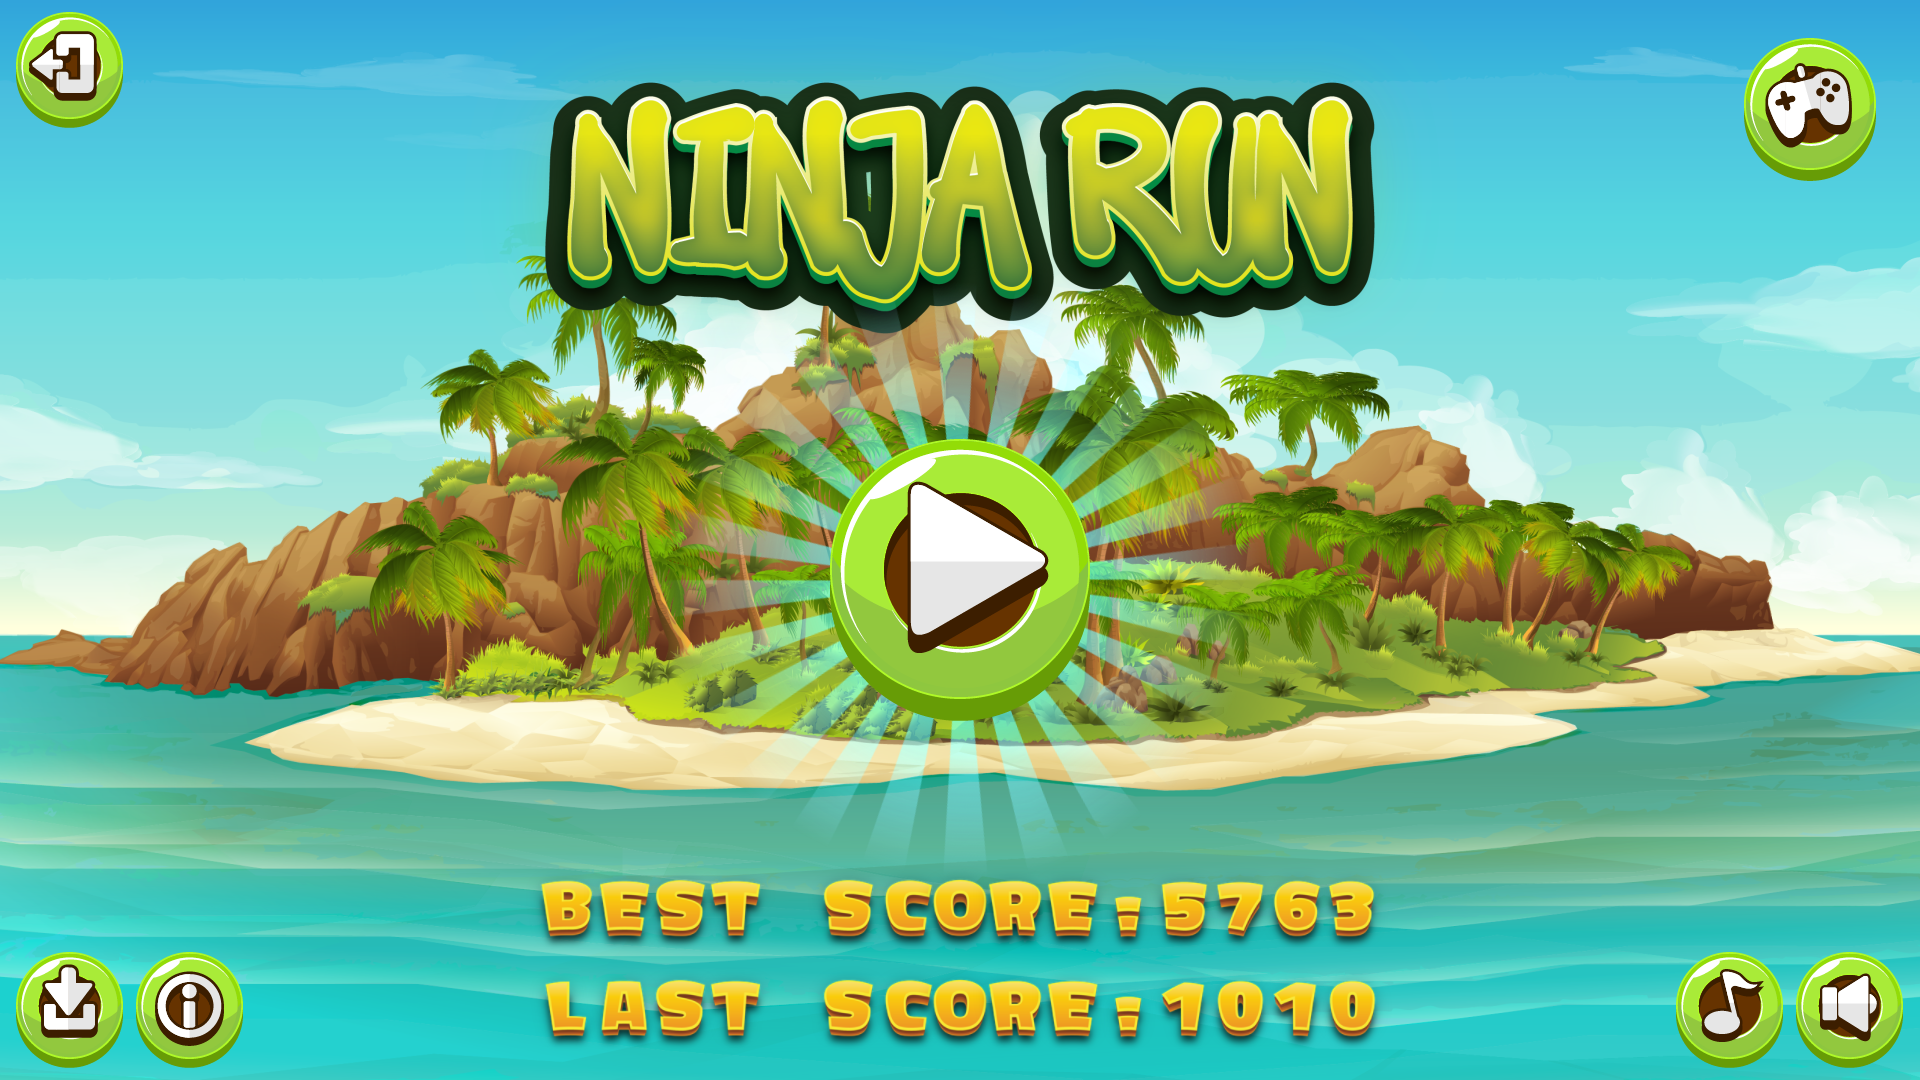 Ninja Run game image